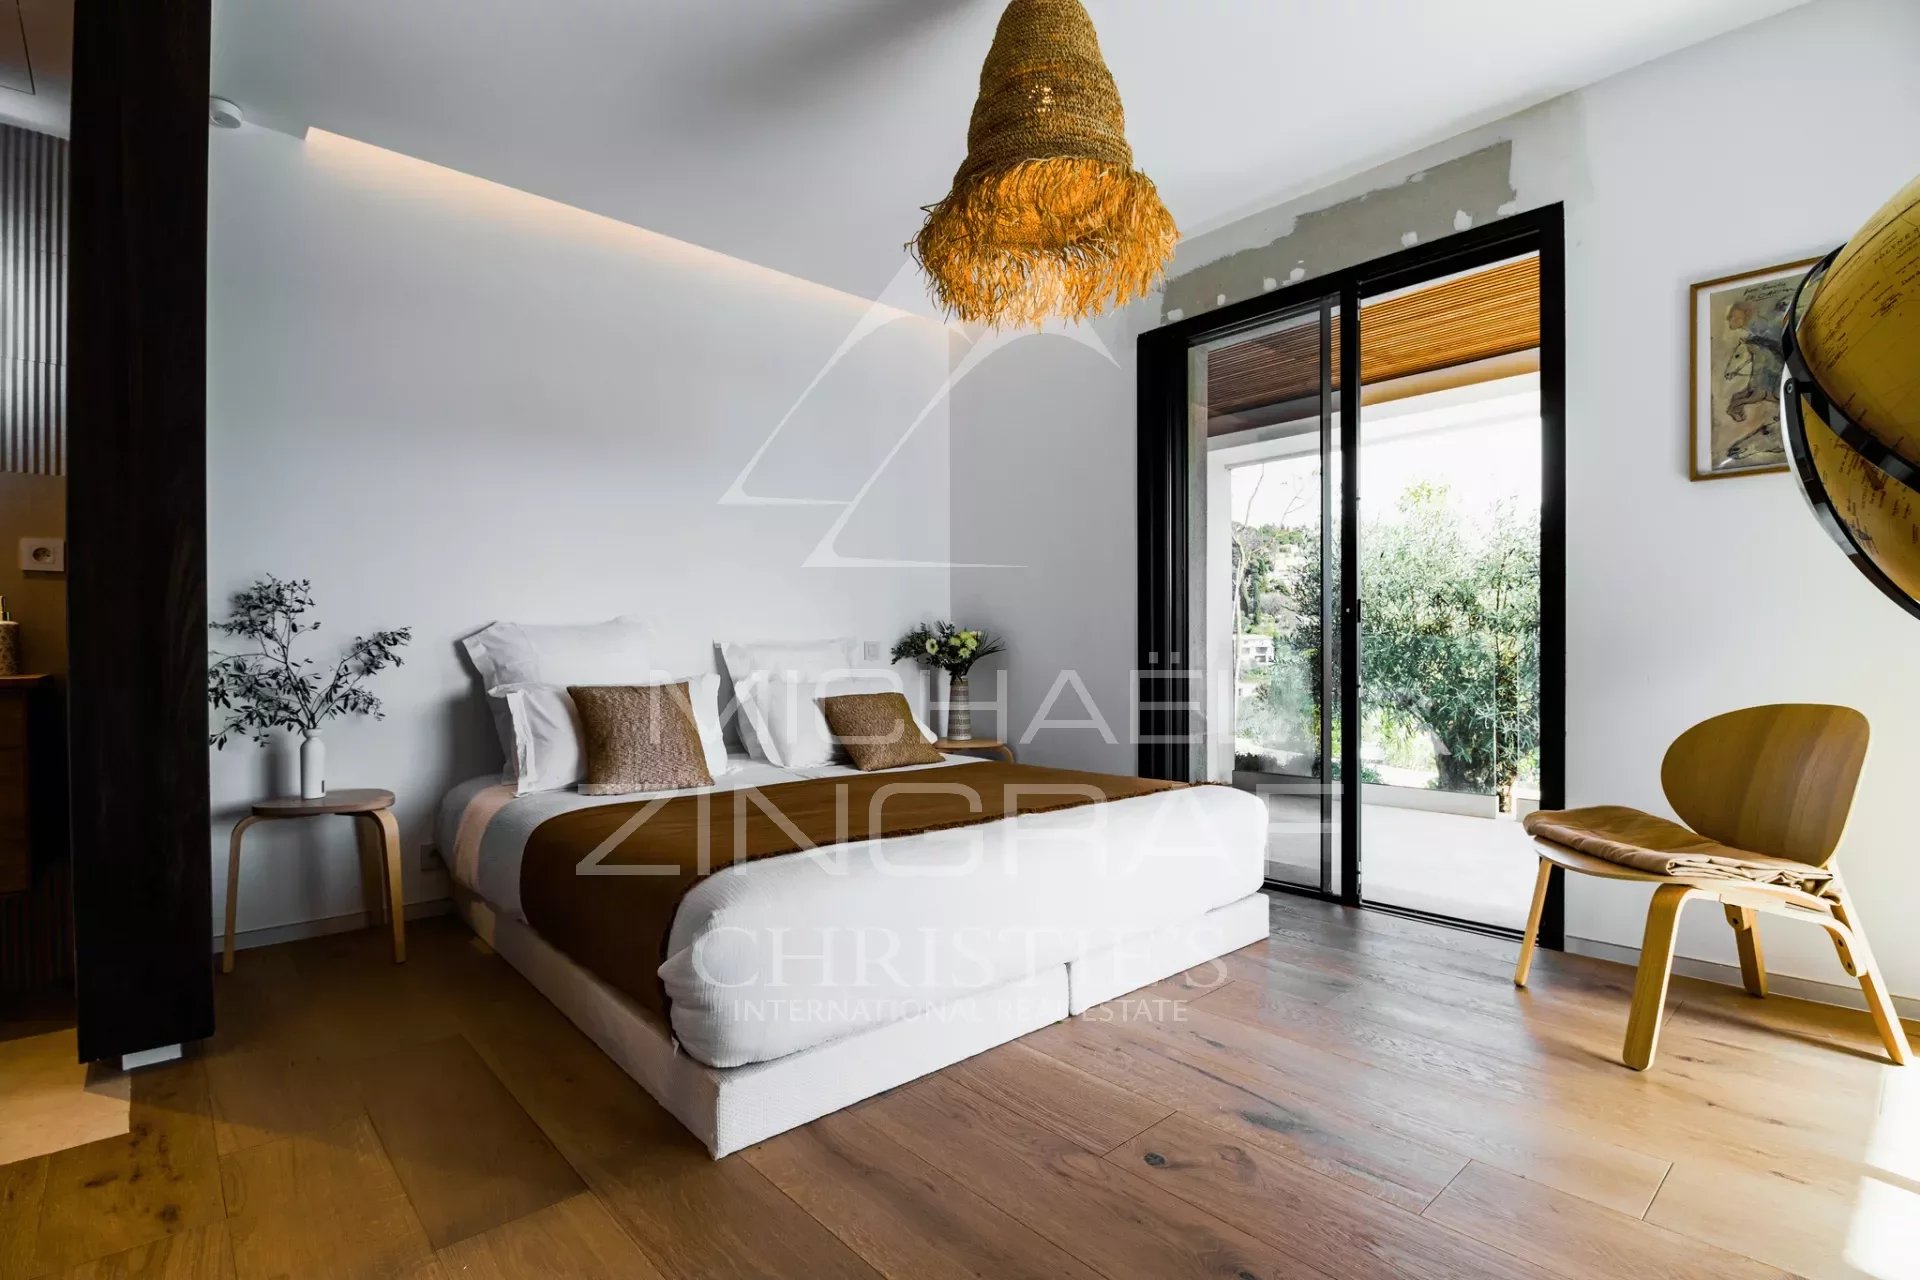 MOUGINS - 5 bedroom contemporary villa